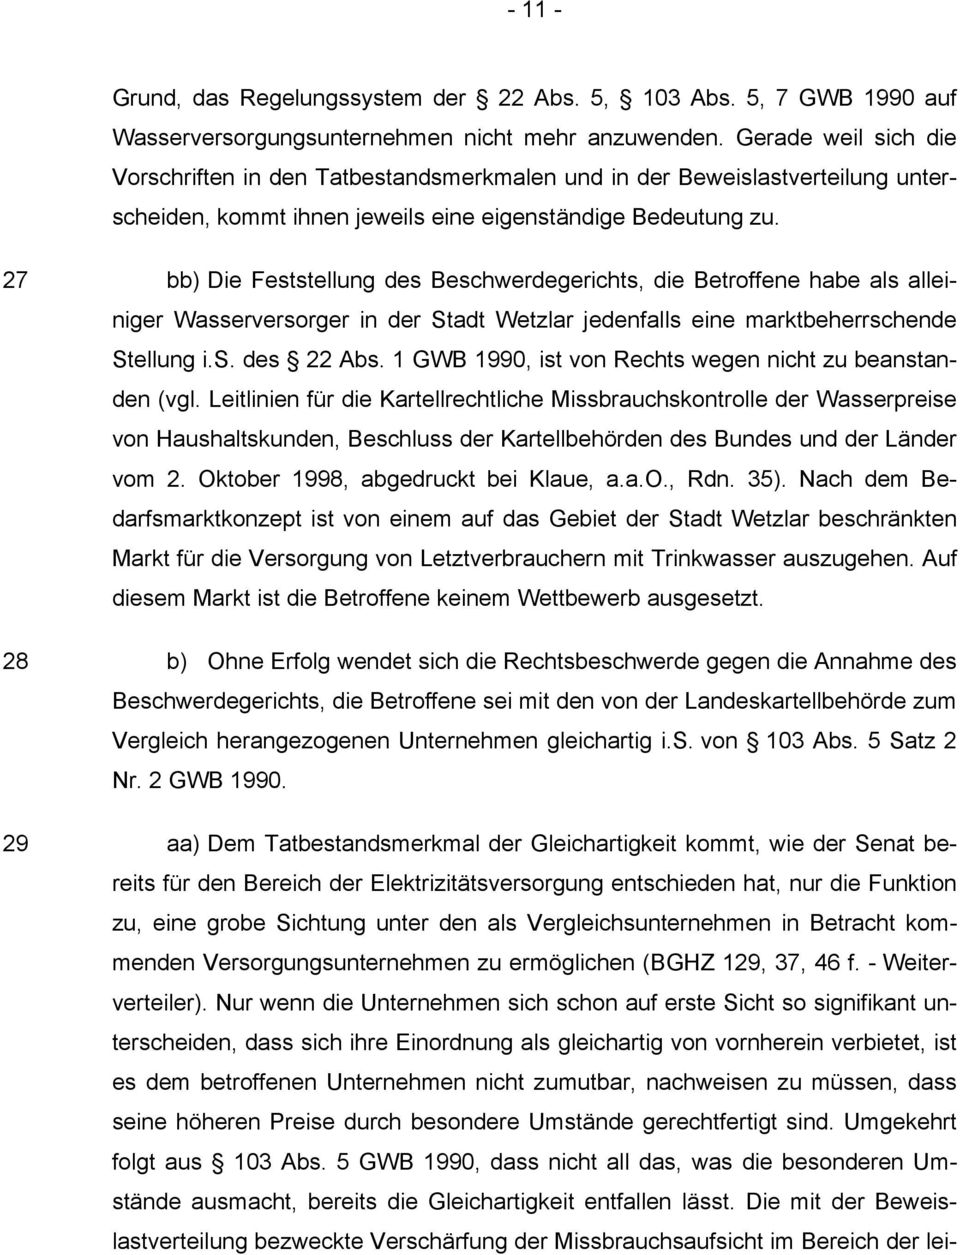 27 bb) Die Feststellung des Beschwerdegerichts, die Betroffene habe als alleiniger Wasserversorger in der Stadt Wetzlar jedenfalls eine marktbeherrschende Stellung i.s. des 22 Abs.